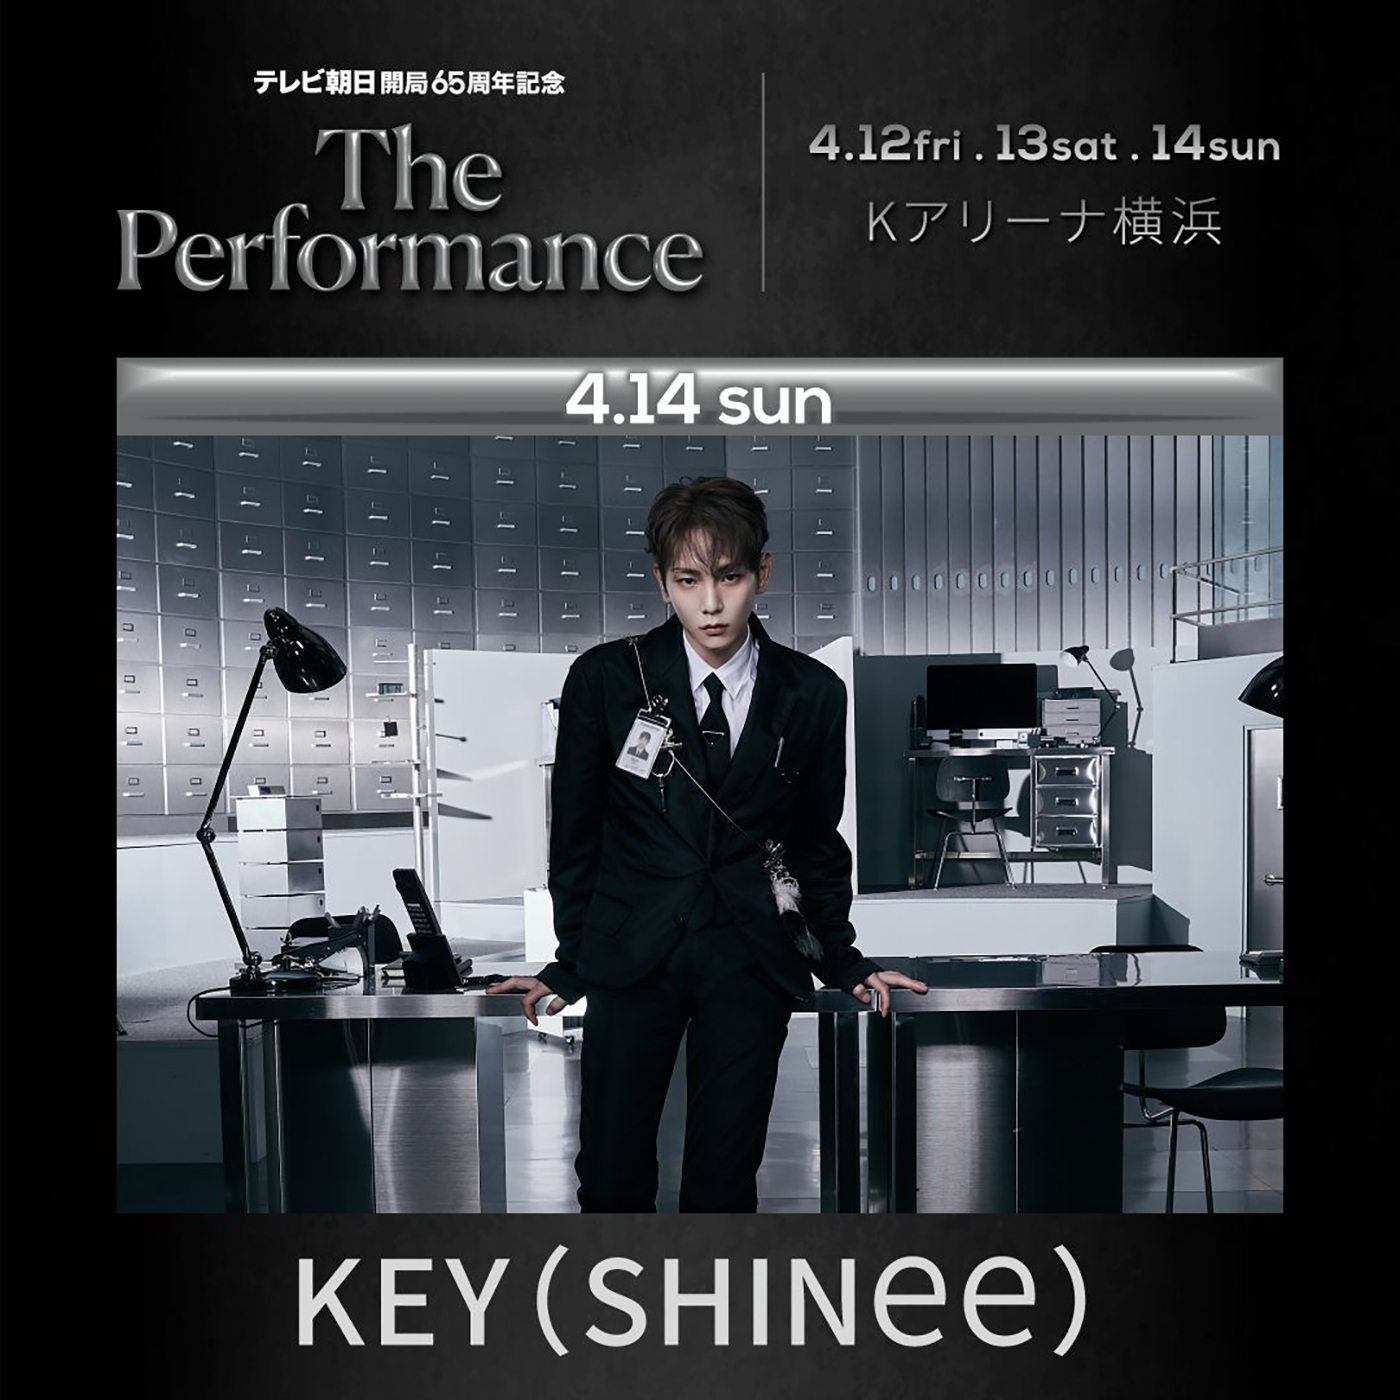 SHINee KEY、テレビ朝日開局65周年を記念したグローバルミュージックフェスティバル『The Performance』に出演決定 - 画像一覧（2/2）